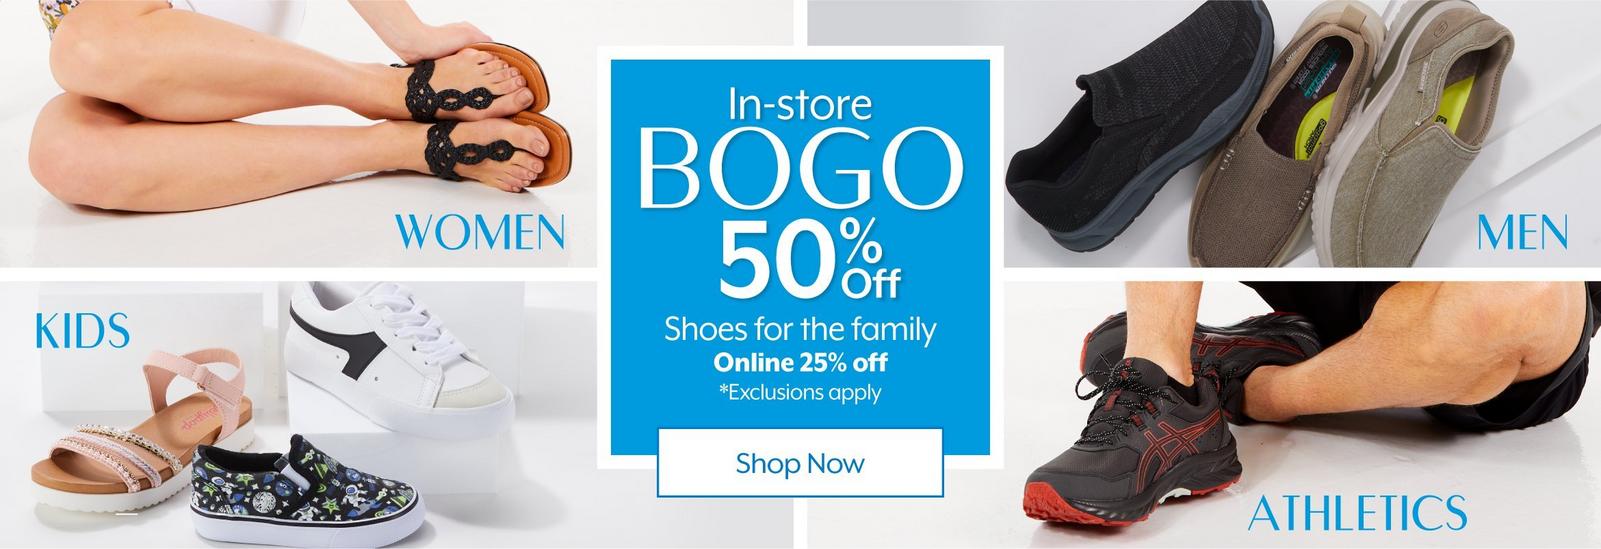 Bealls Stores: BOGO $1 Reel Legends apparel for the family